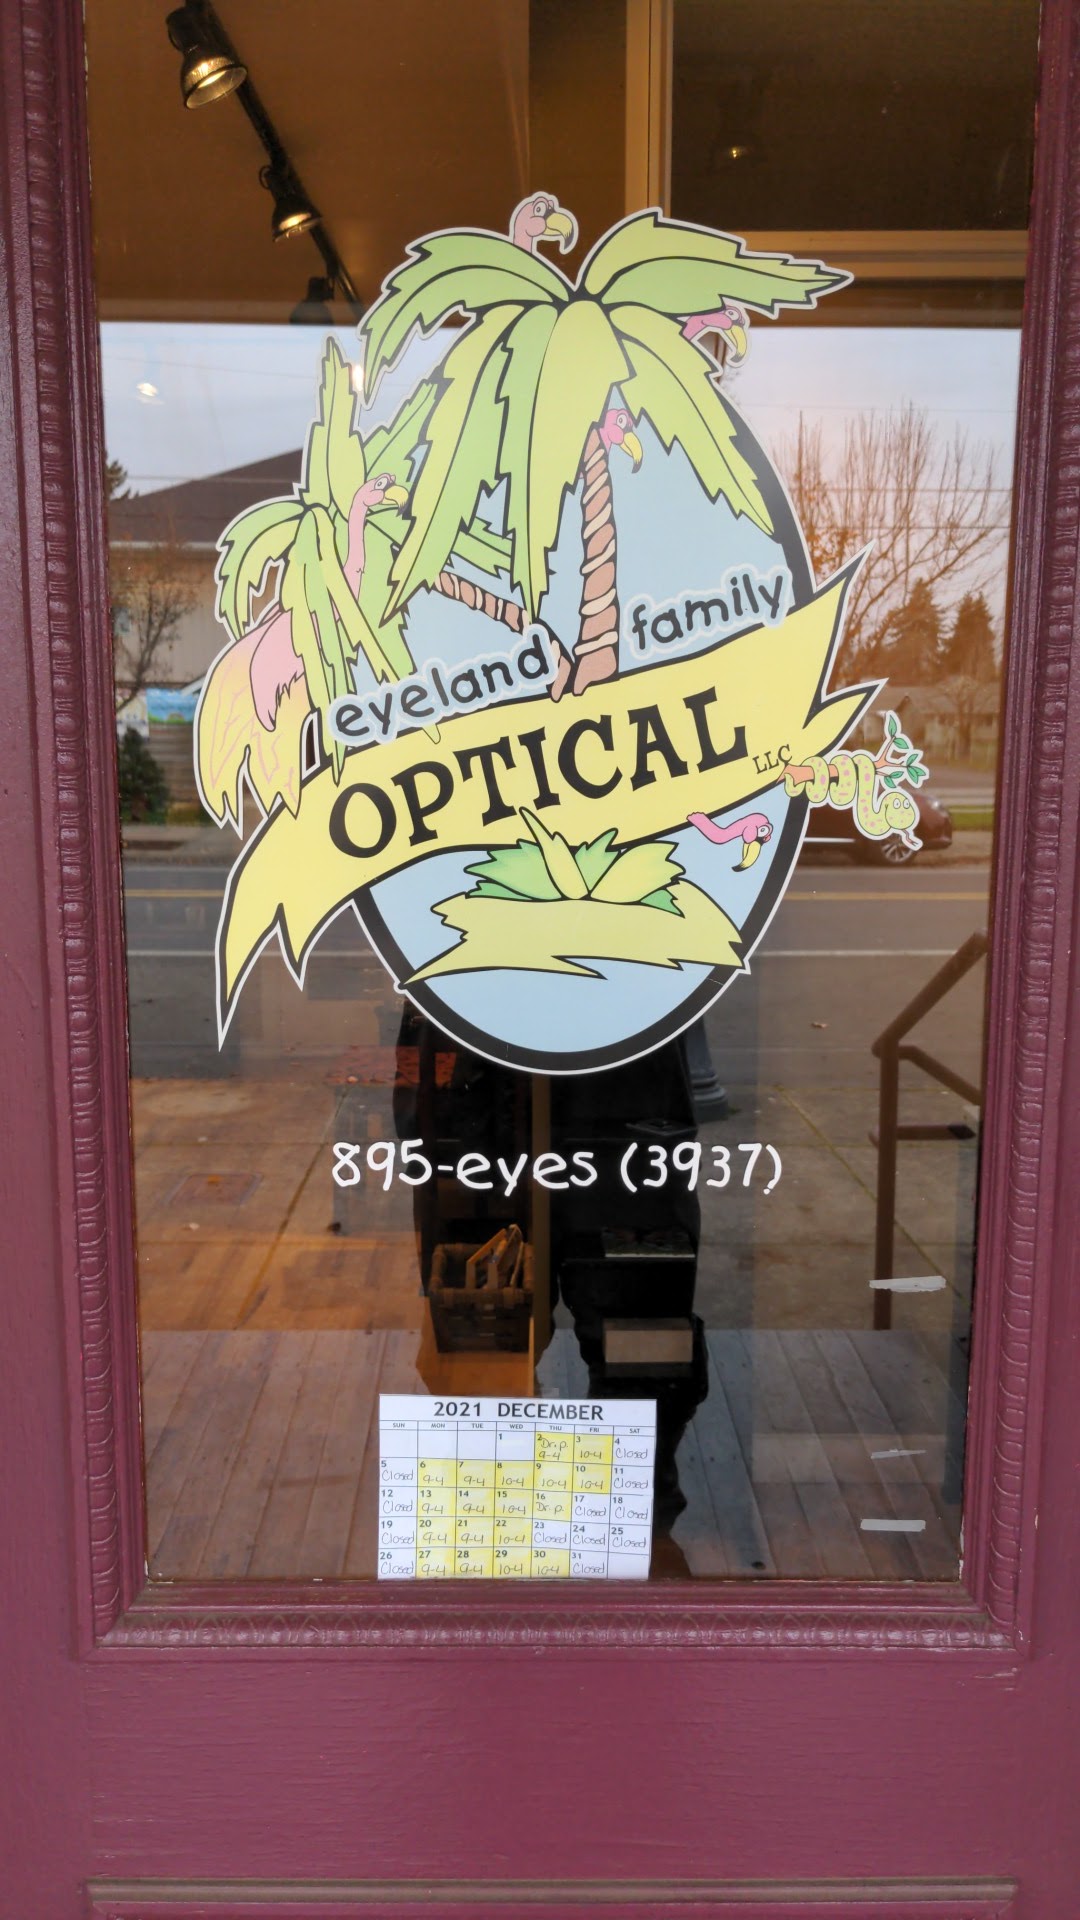 Eyeland Family Optical 281 W Oregon Ave, Creswell Oregon 97426